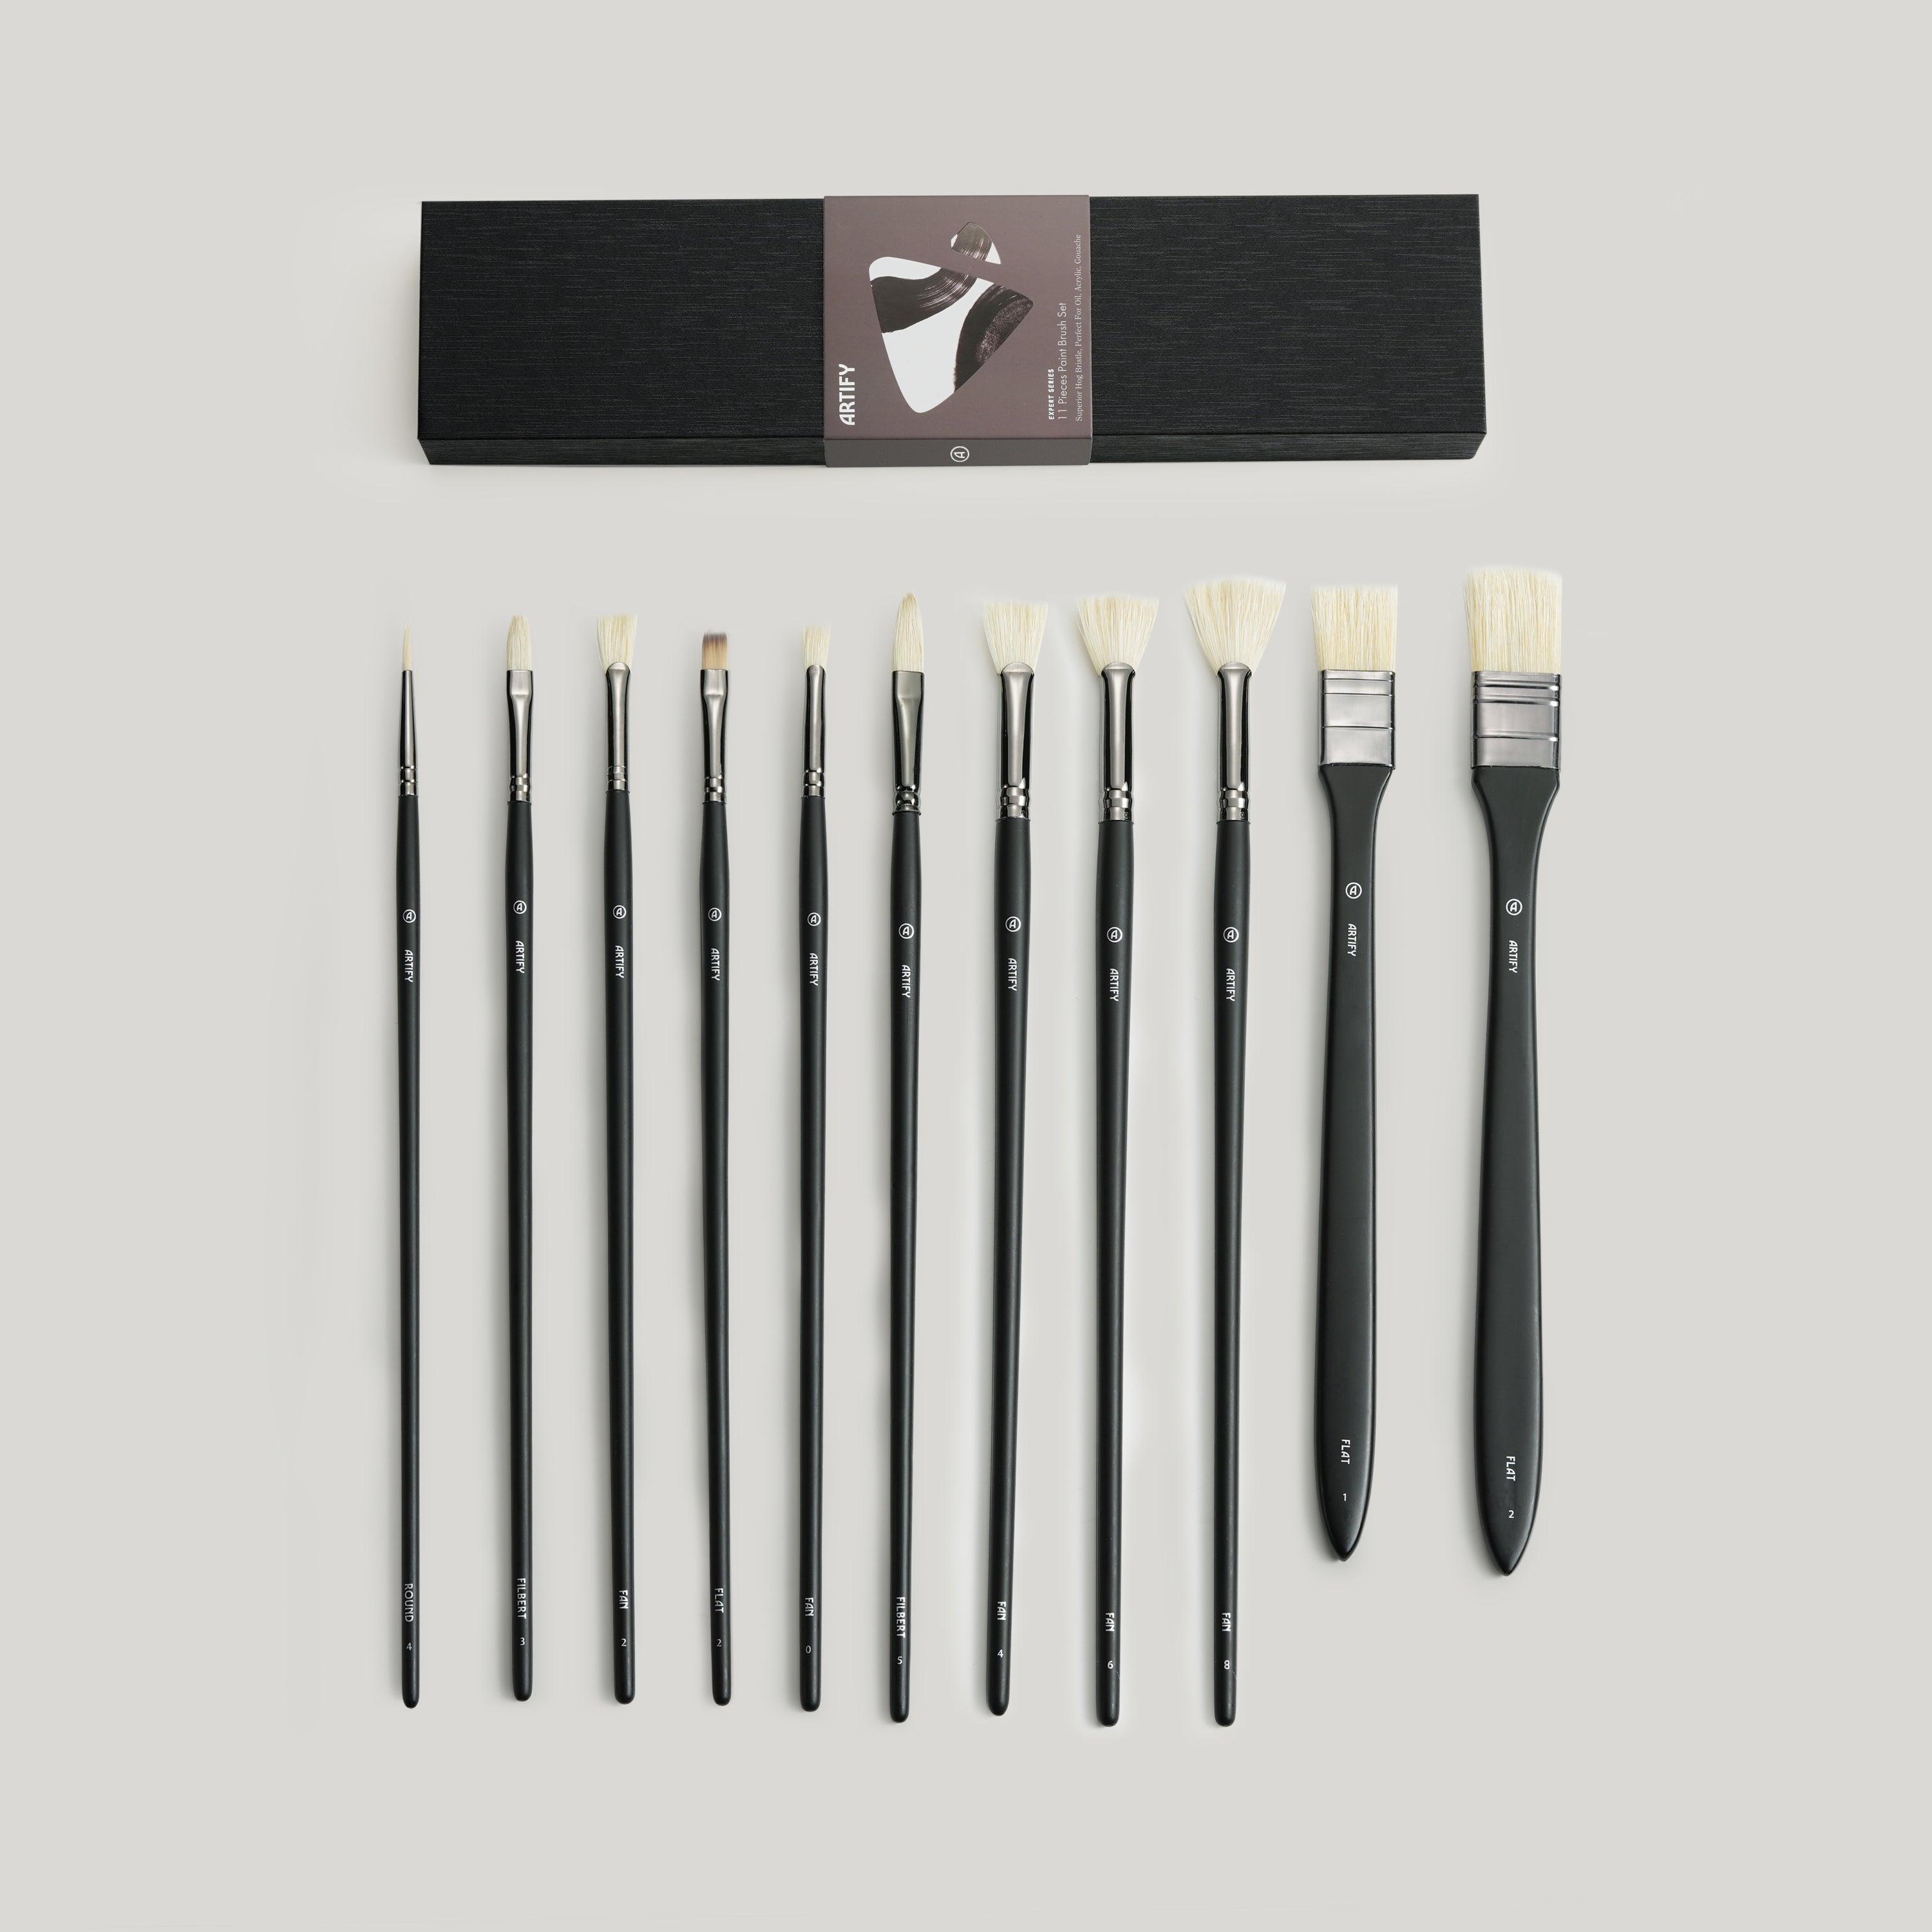 Acrylic Paint Brush Set